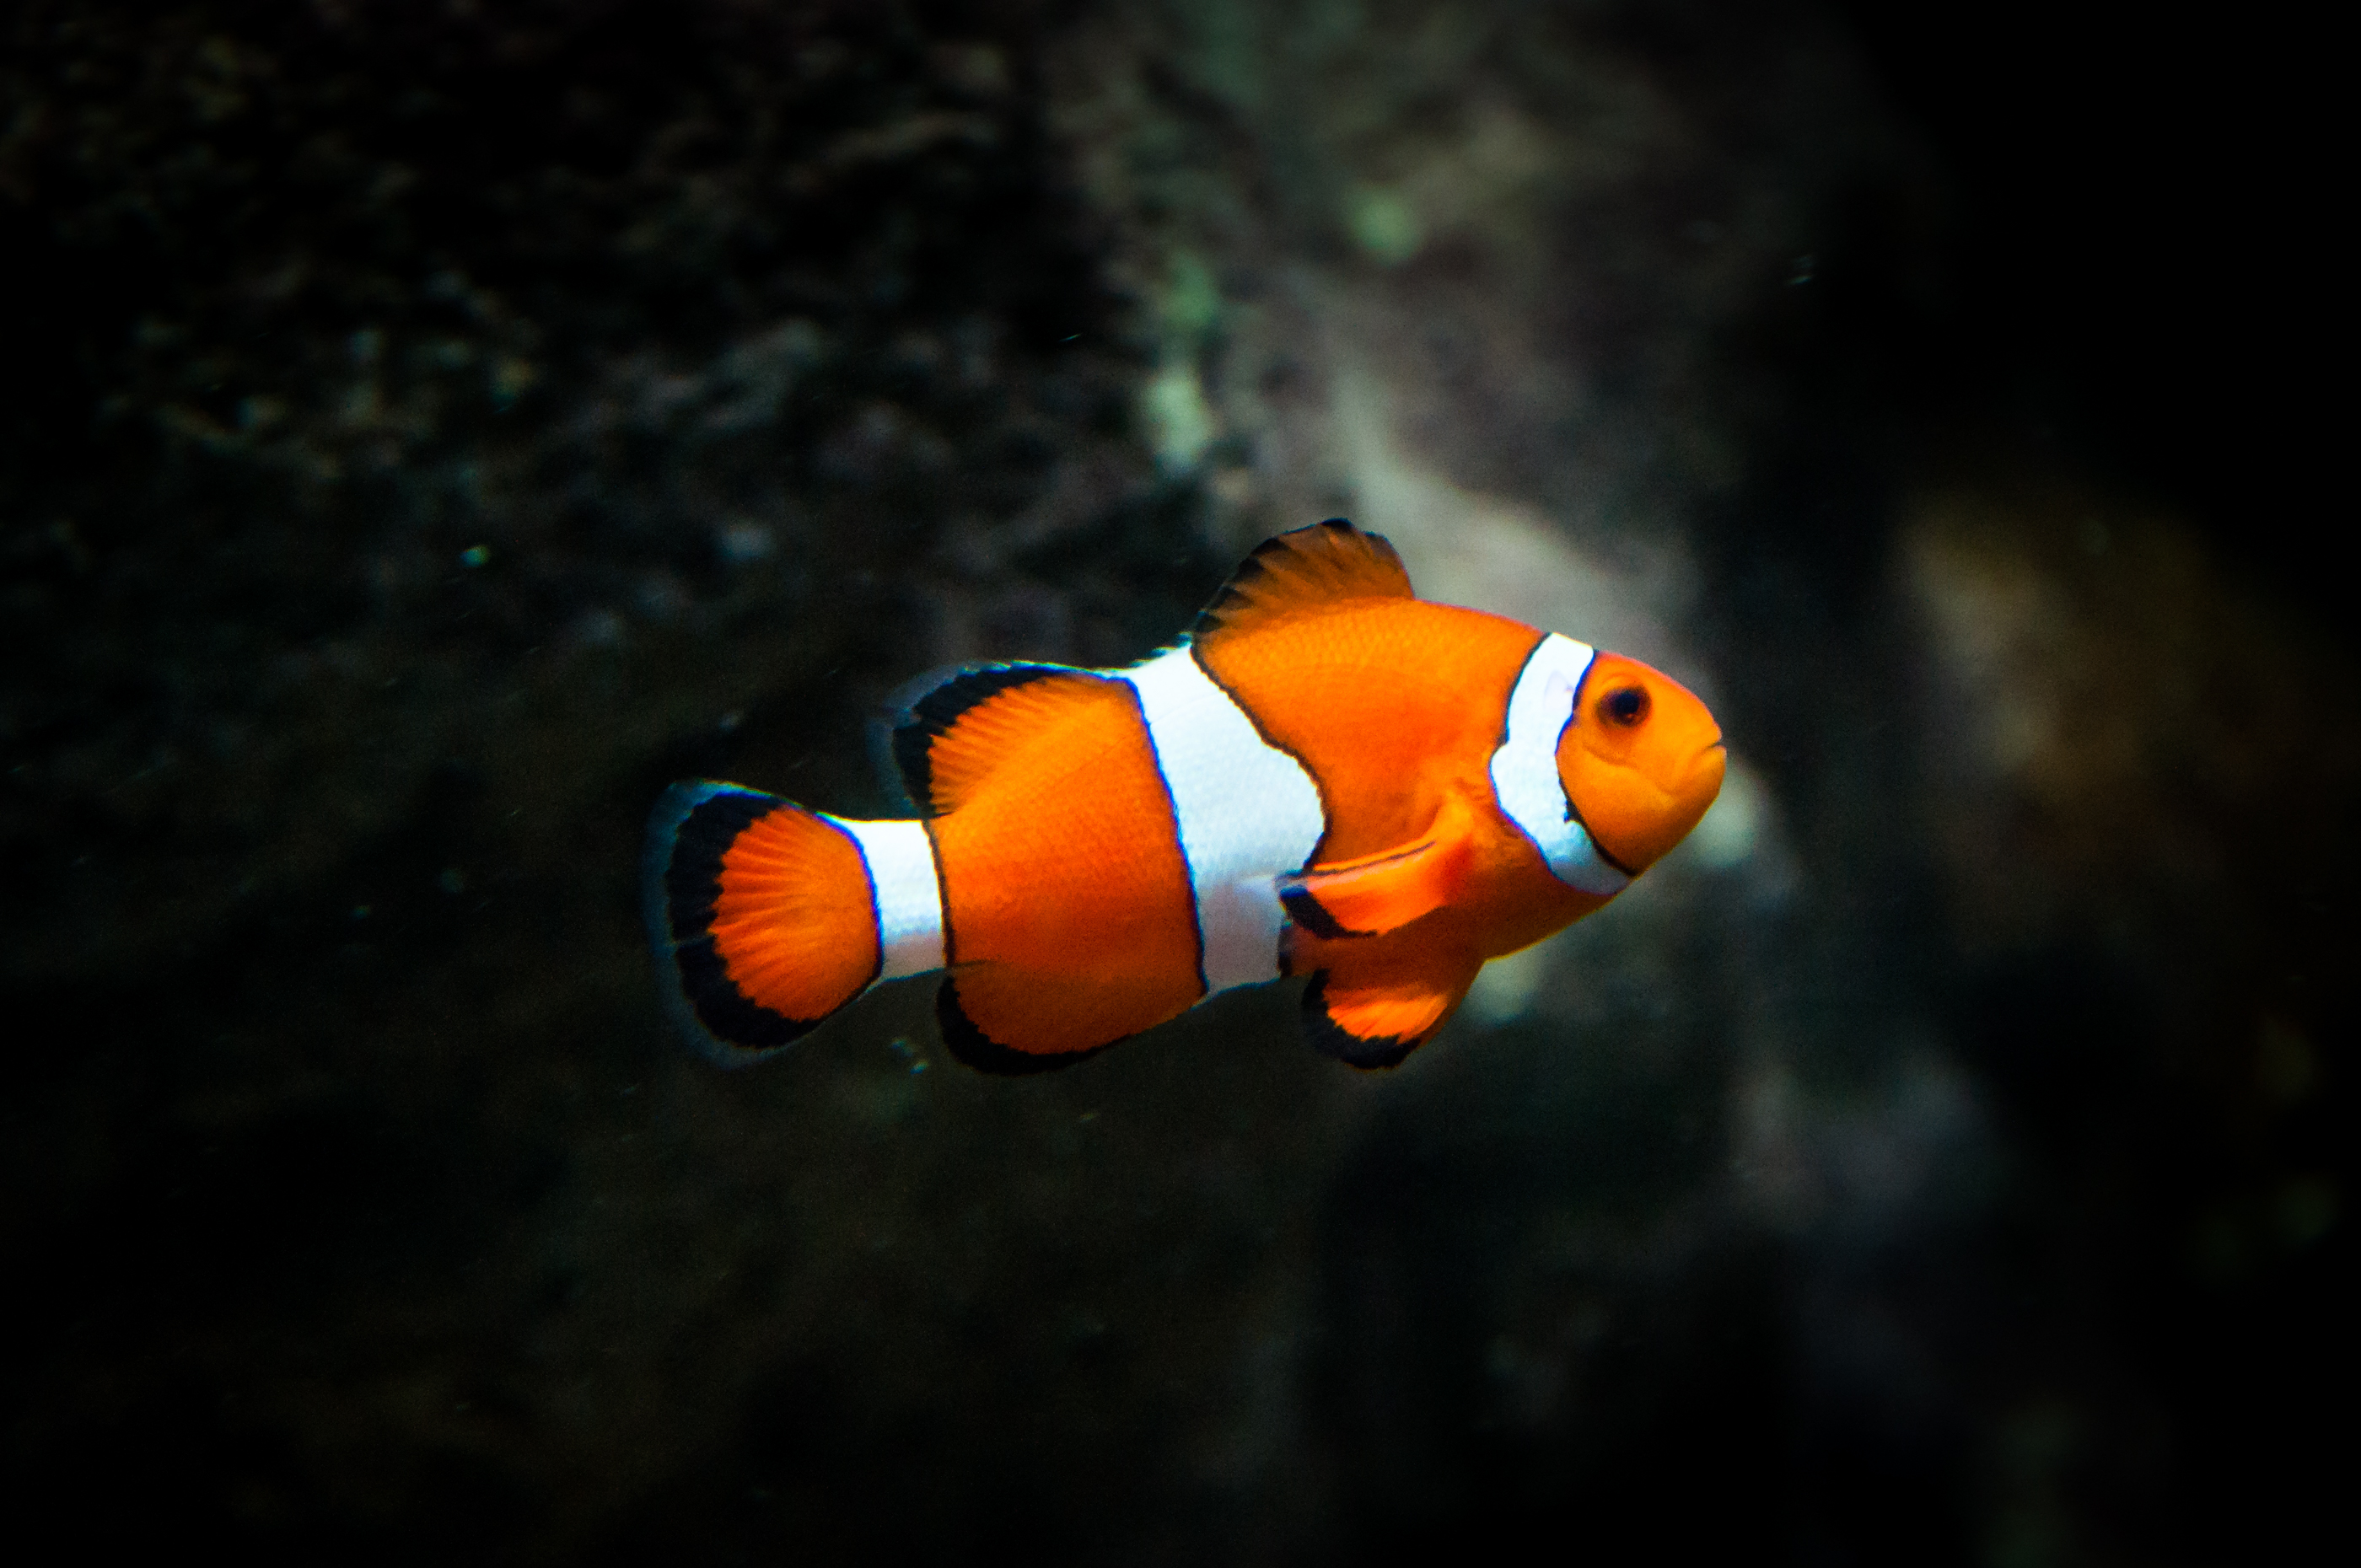 Clownfish fish photo